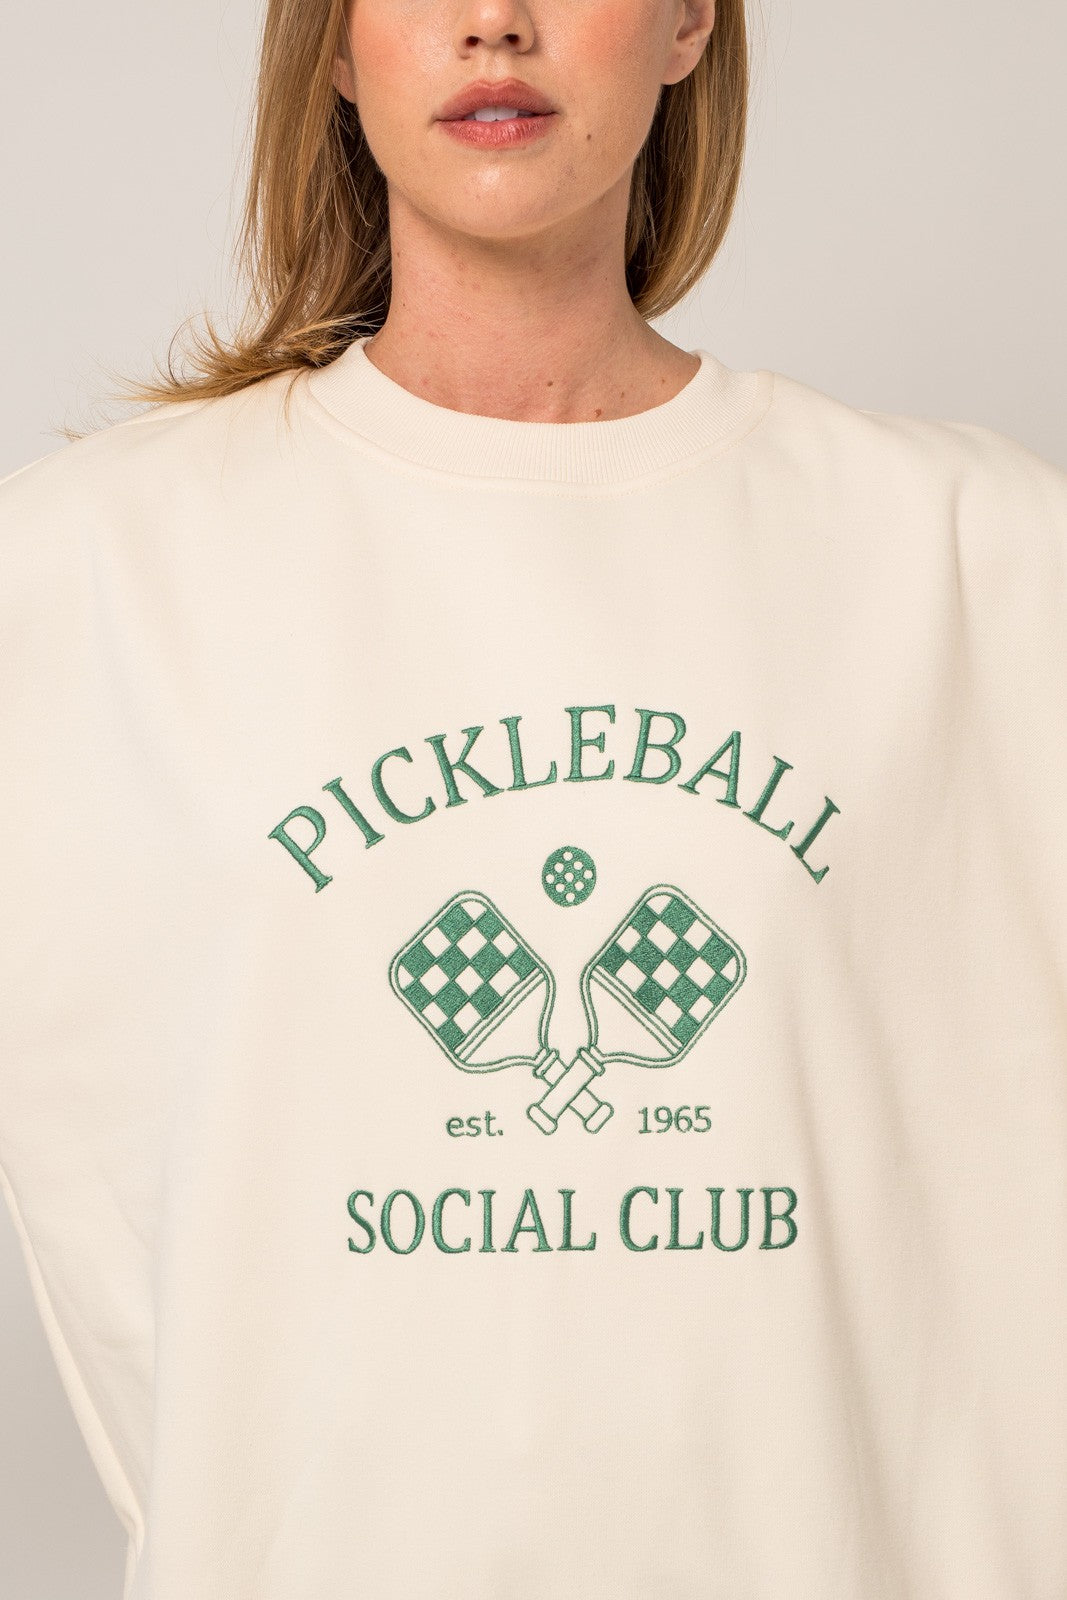 LONG SLEEVE PICKLEBALL SOCIAL CLUB SWEATSHIRT